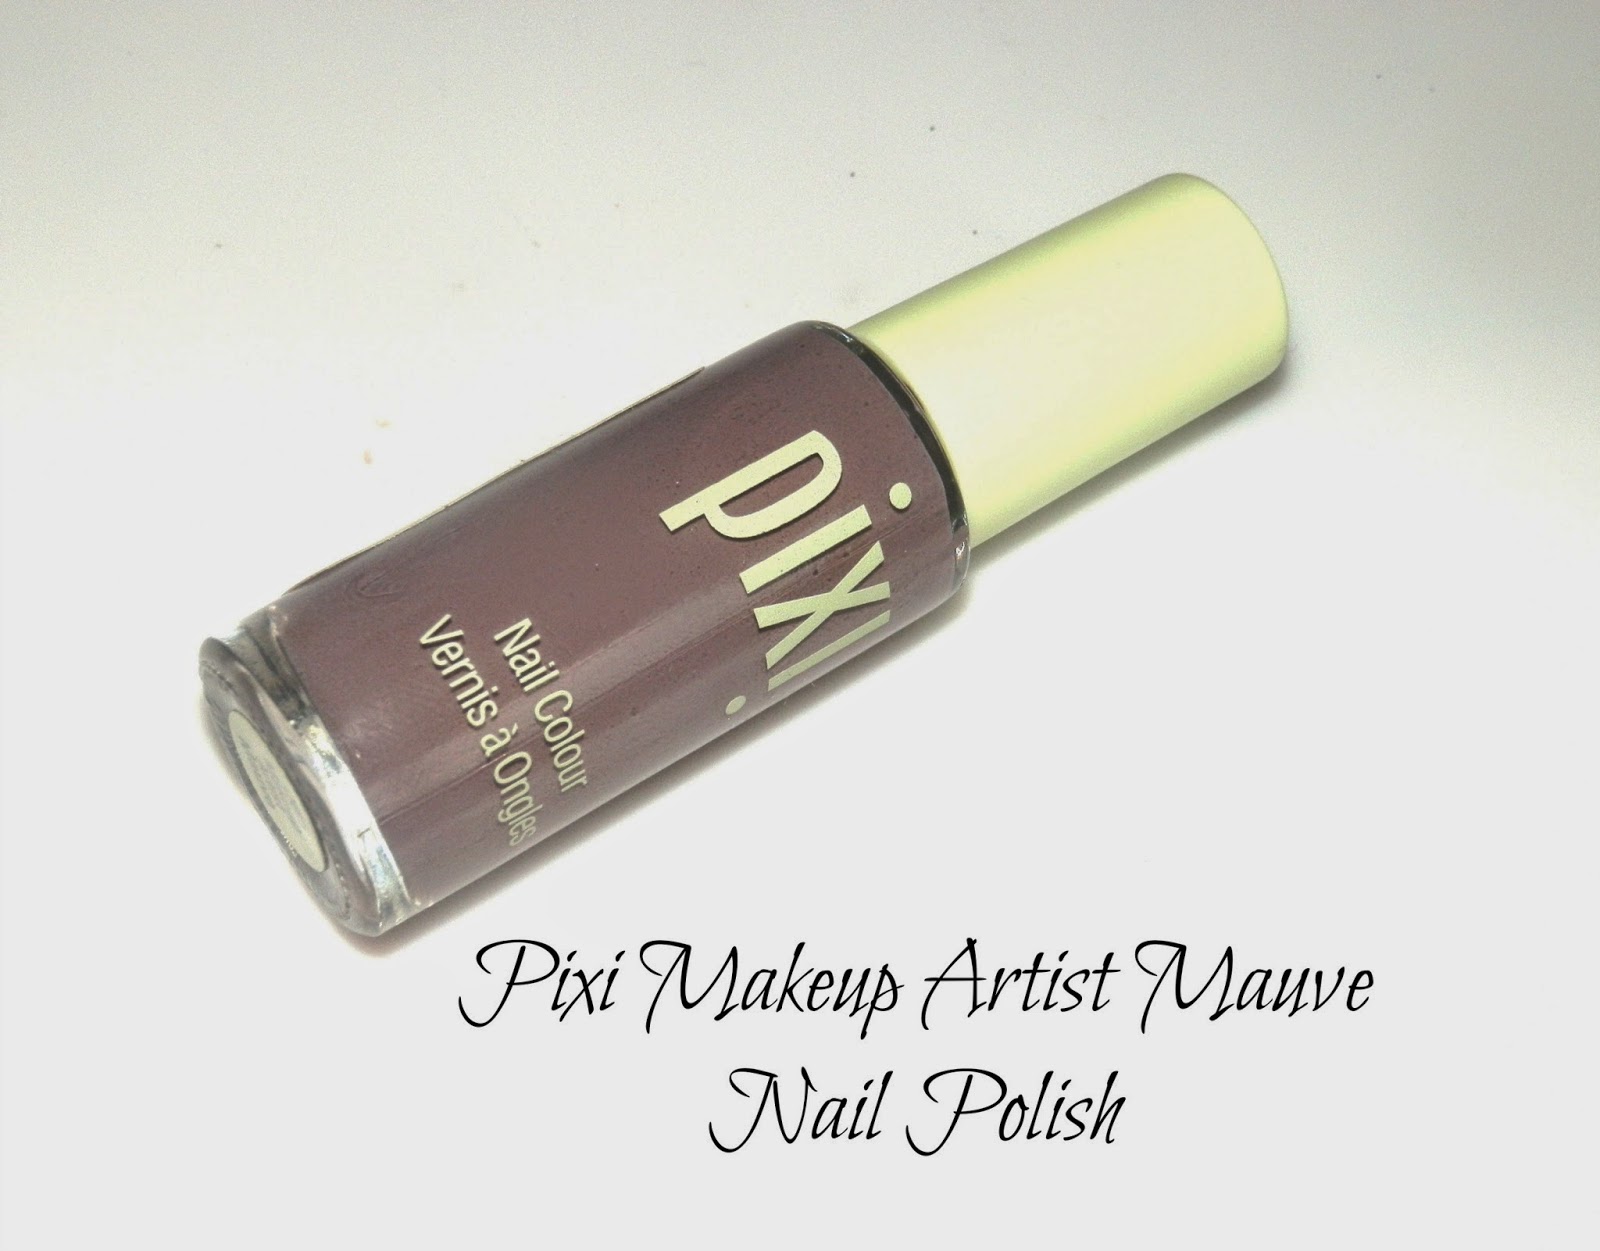 Pixi Makeup Artist Mauve Nail Polish Swatches